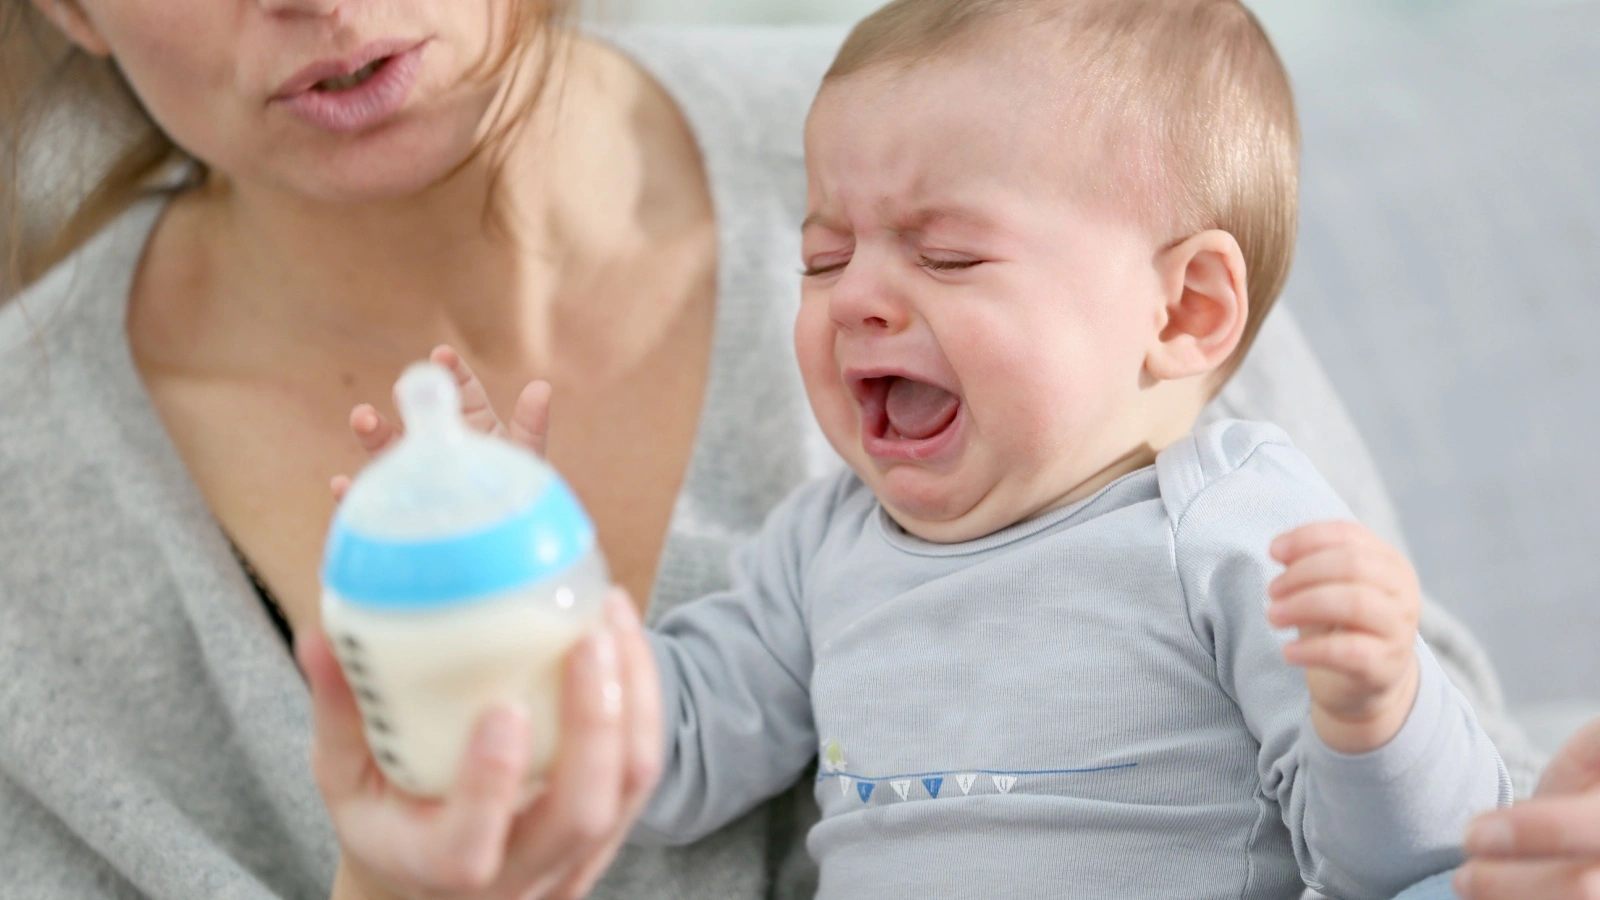 ما هي أسباب رفض الطفل الرضاعة؟ وكيف يمكن التغلب عليها؟